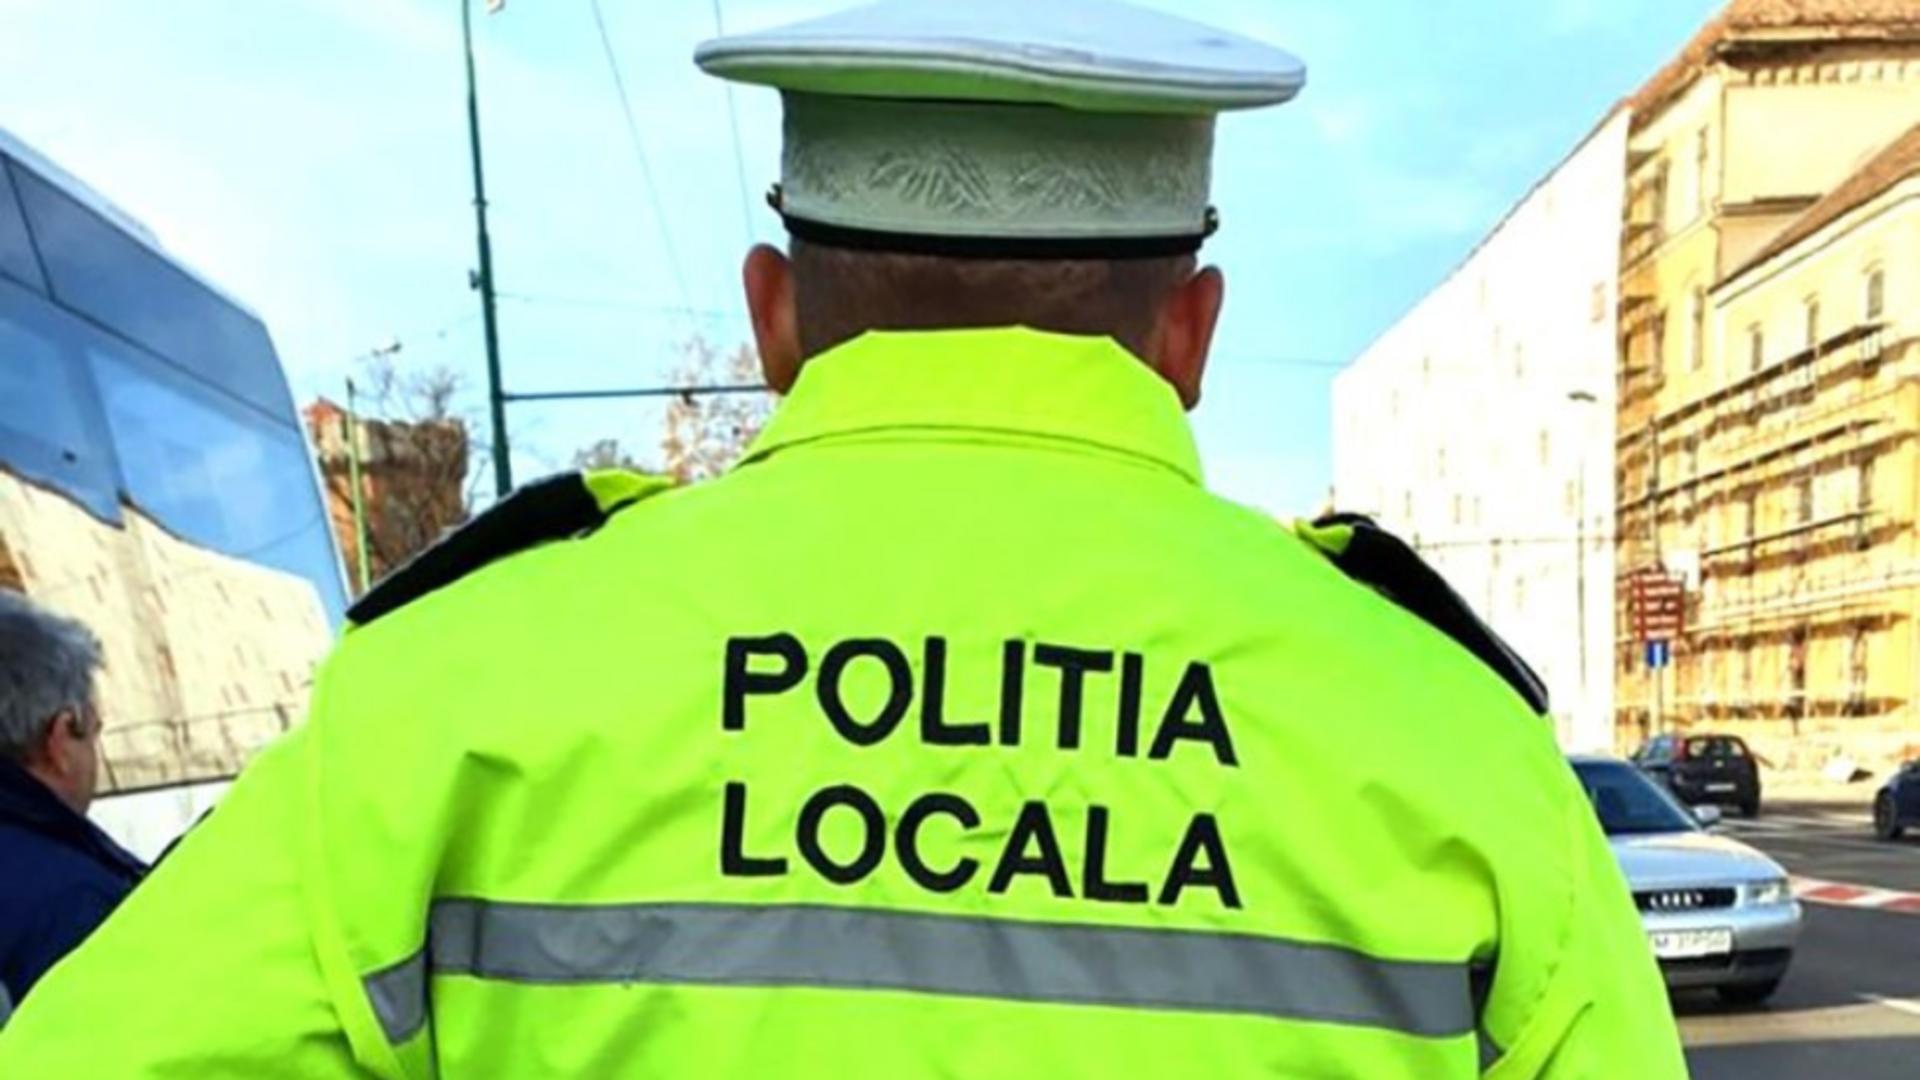 Poliția locală - imagine de arhivă